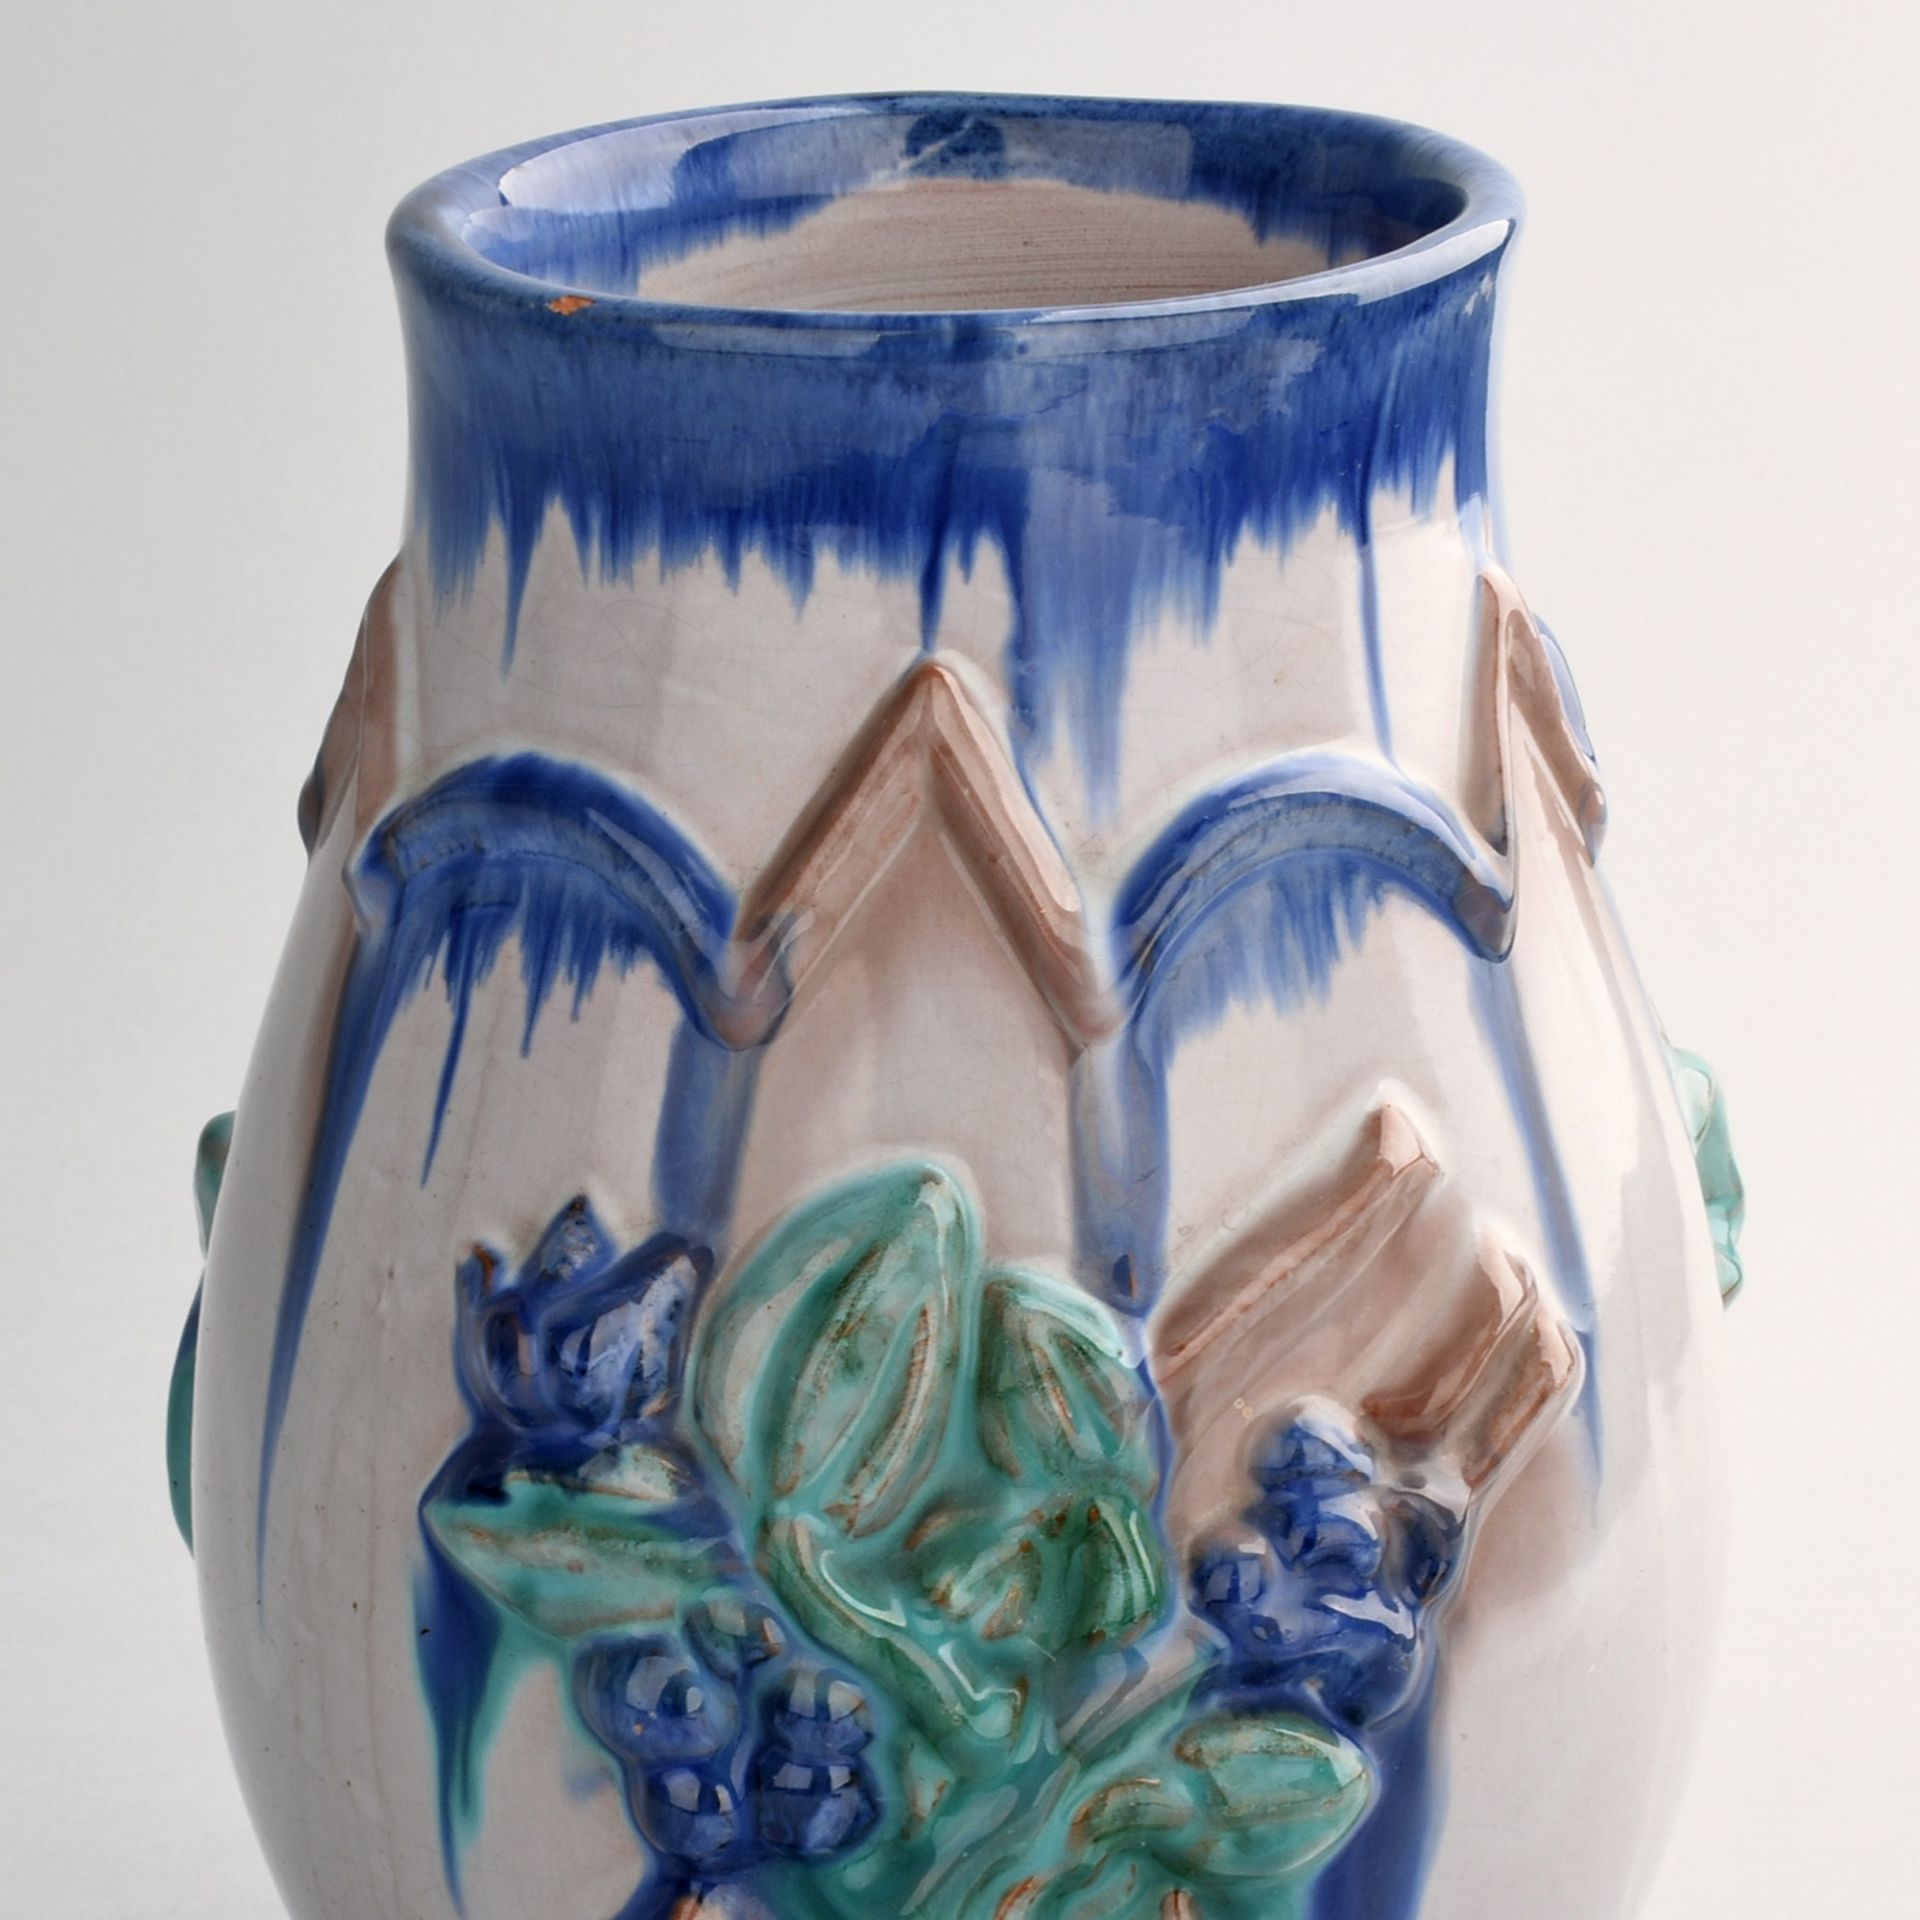 Vase gemarkt "Made in Austria", ziegelroter Scherben, bauchige Wandung mit leicht ausschwingendem